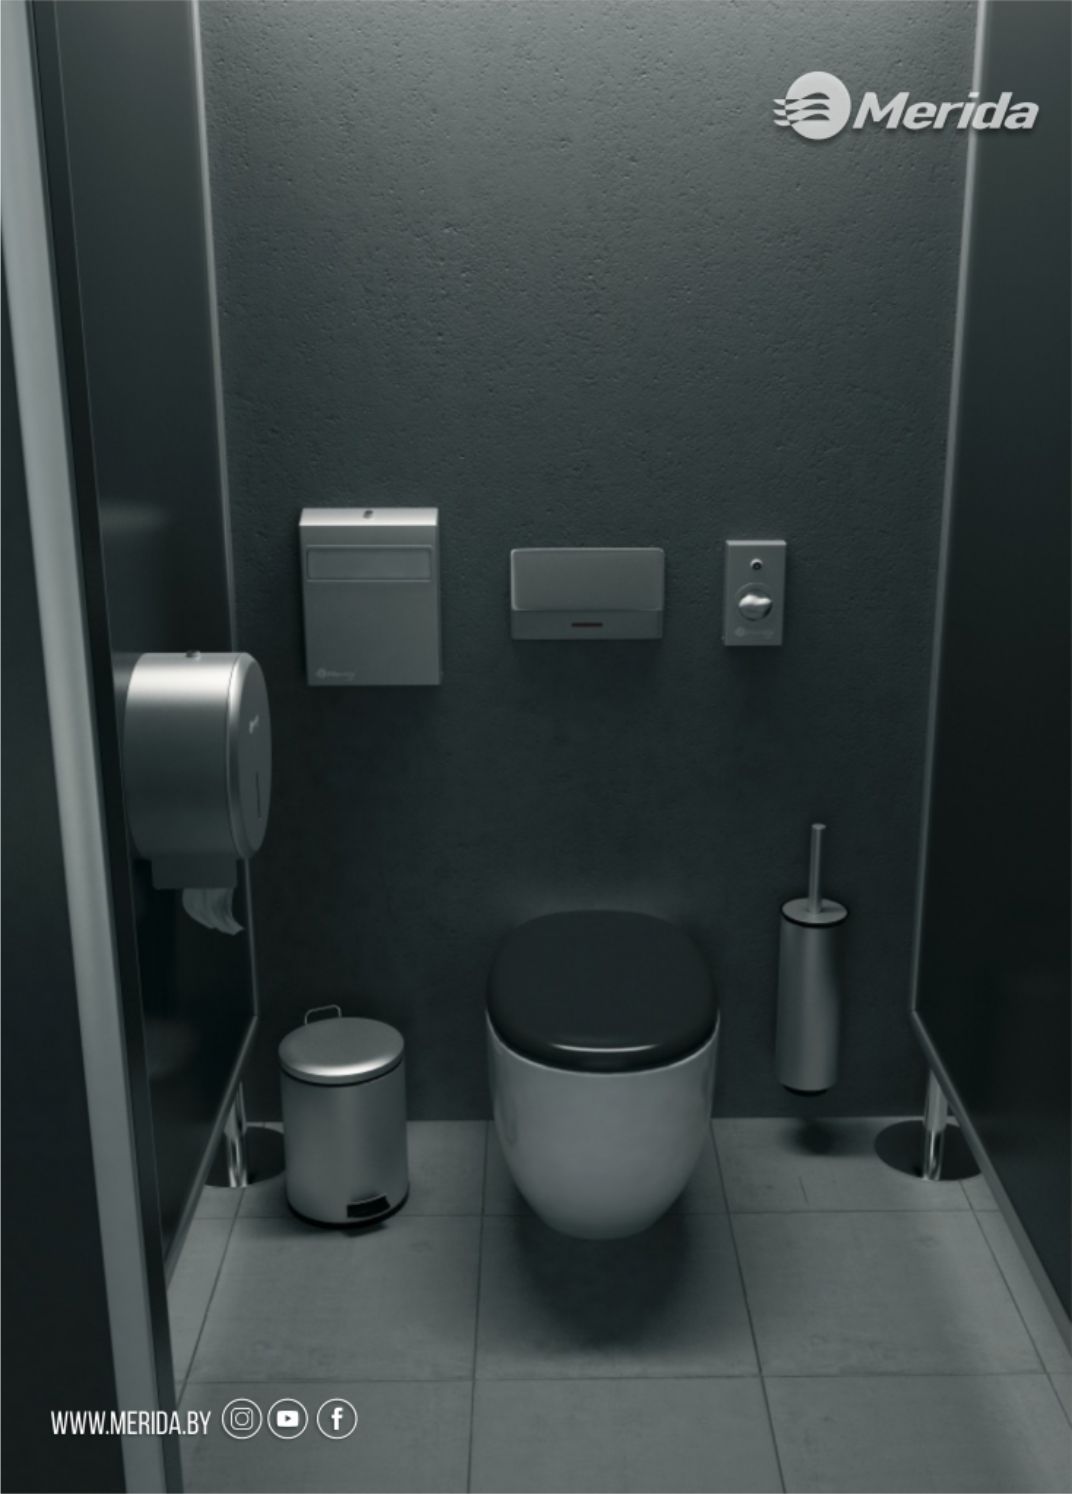 Индивидуальная кабинка туалетной комнаты